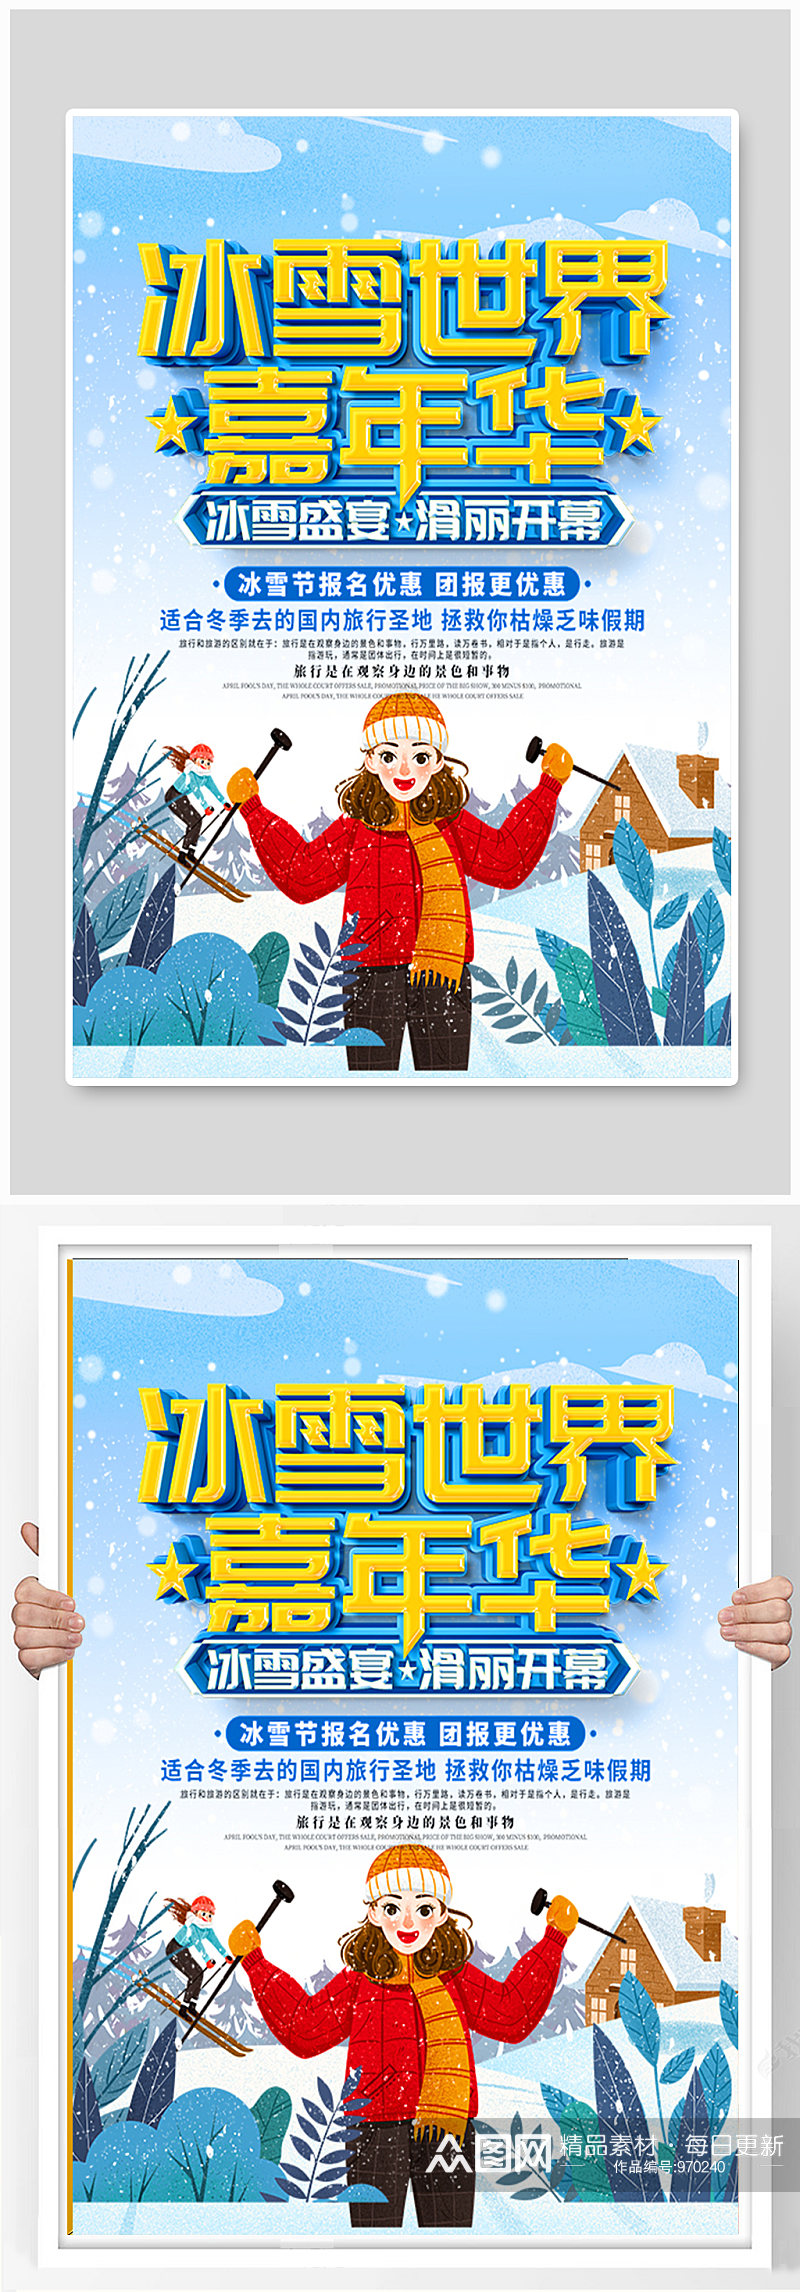 哈尔滨冰雪节宣传海报素材